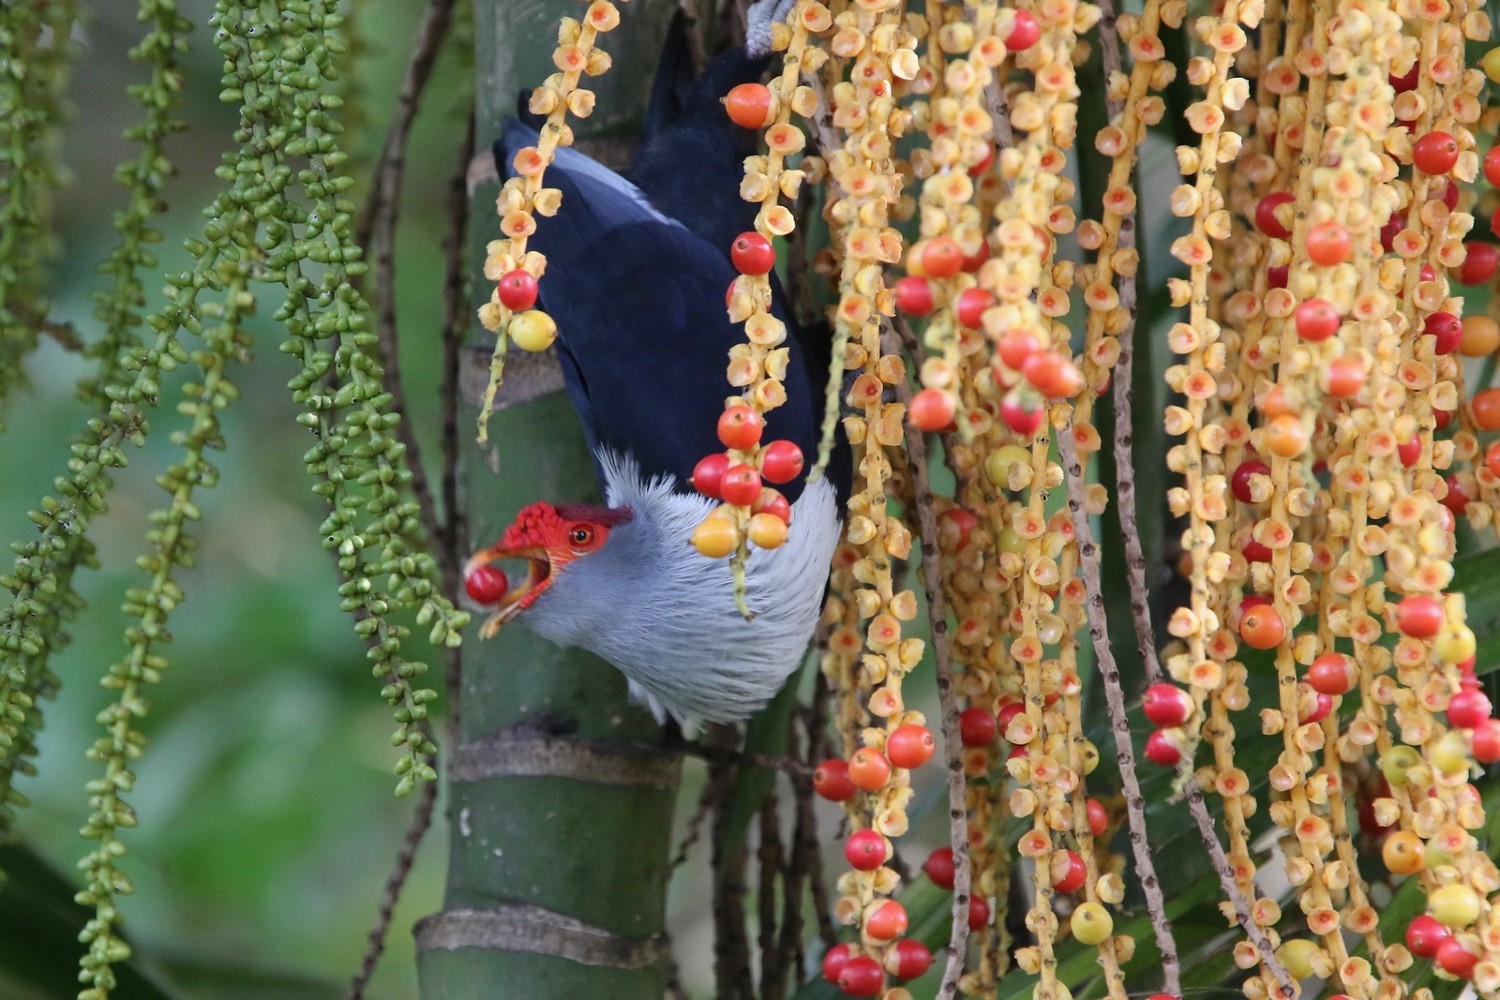 Blue Pigeon colgando boca abajo comiendo una pequeña baya roja.